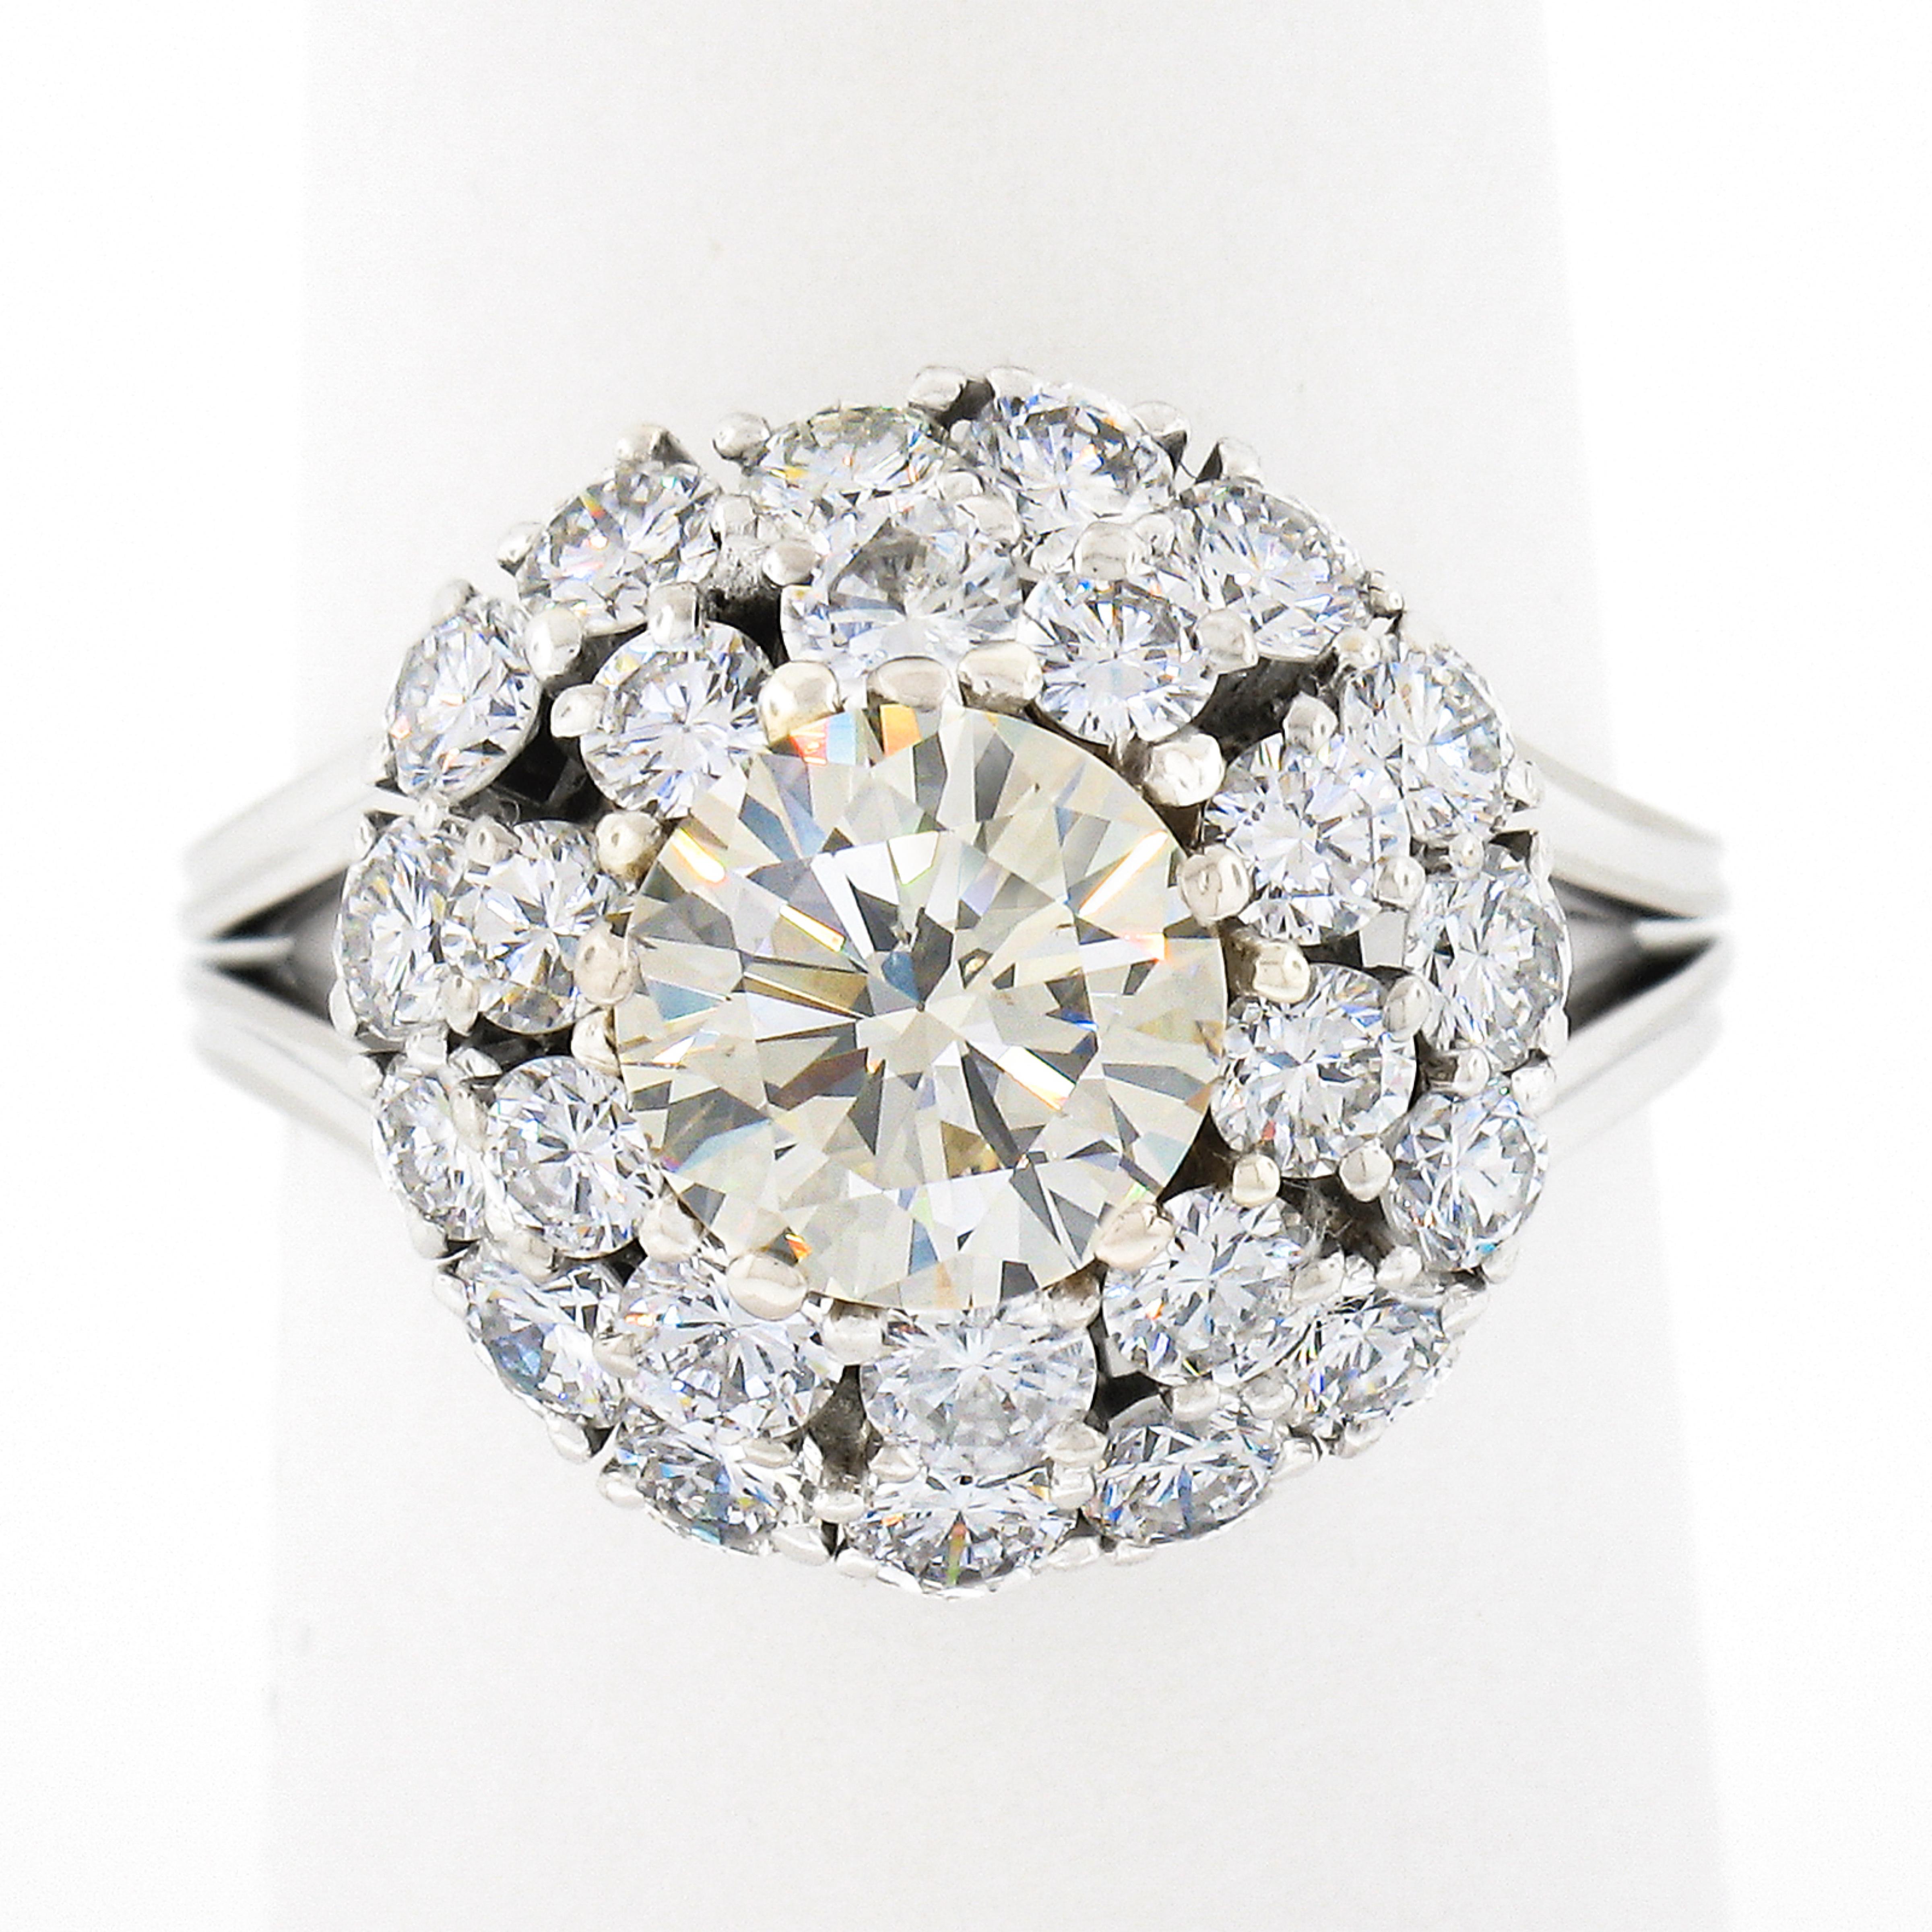 Dieser wirklich atemberaubende und sehr gut gemachte Vintage-Diamant-Verlobungsring oder Cocktail-Ring, der aus massivem 18k Weißgold gefertigt wurde. In der Mitte befindet sich ein atemberaubender hellgelber Diamant, der von einem doppelten,